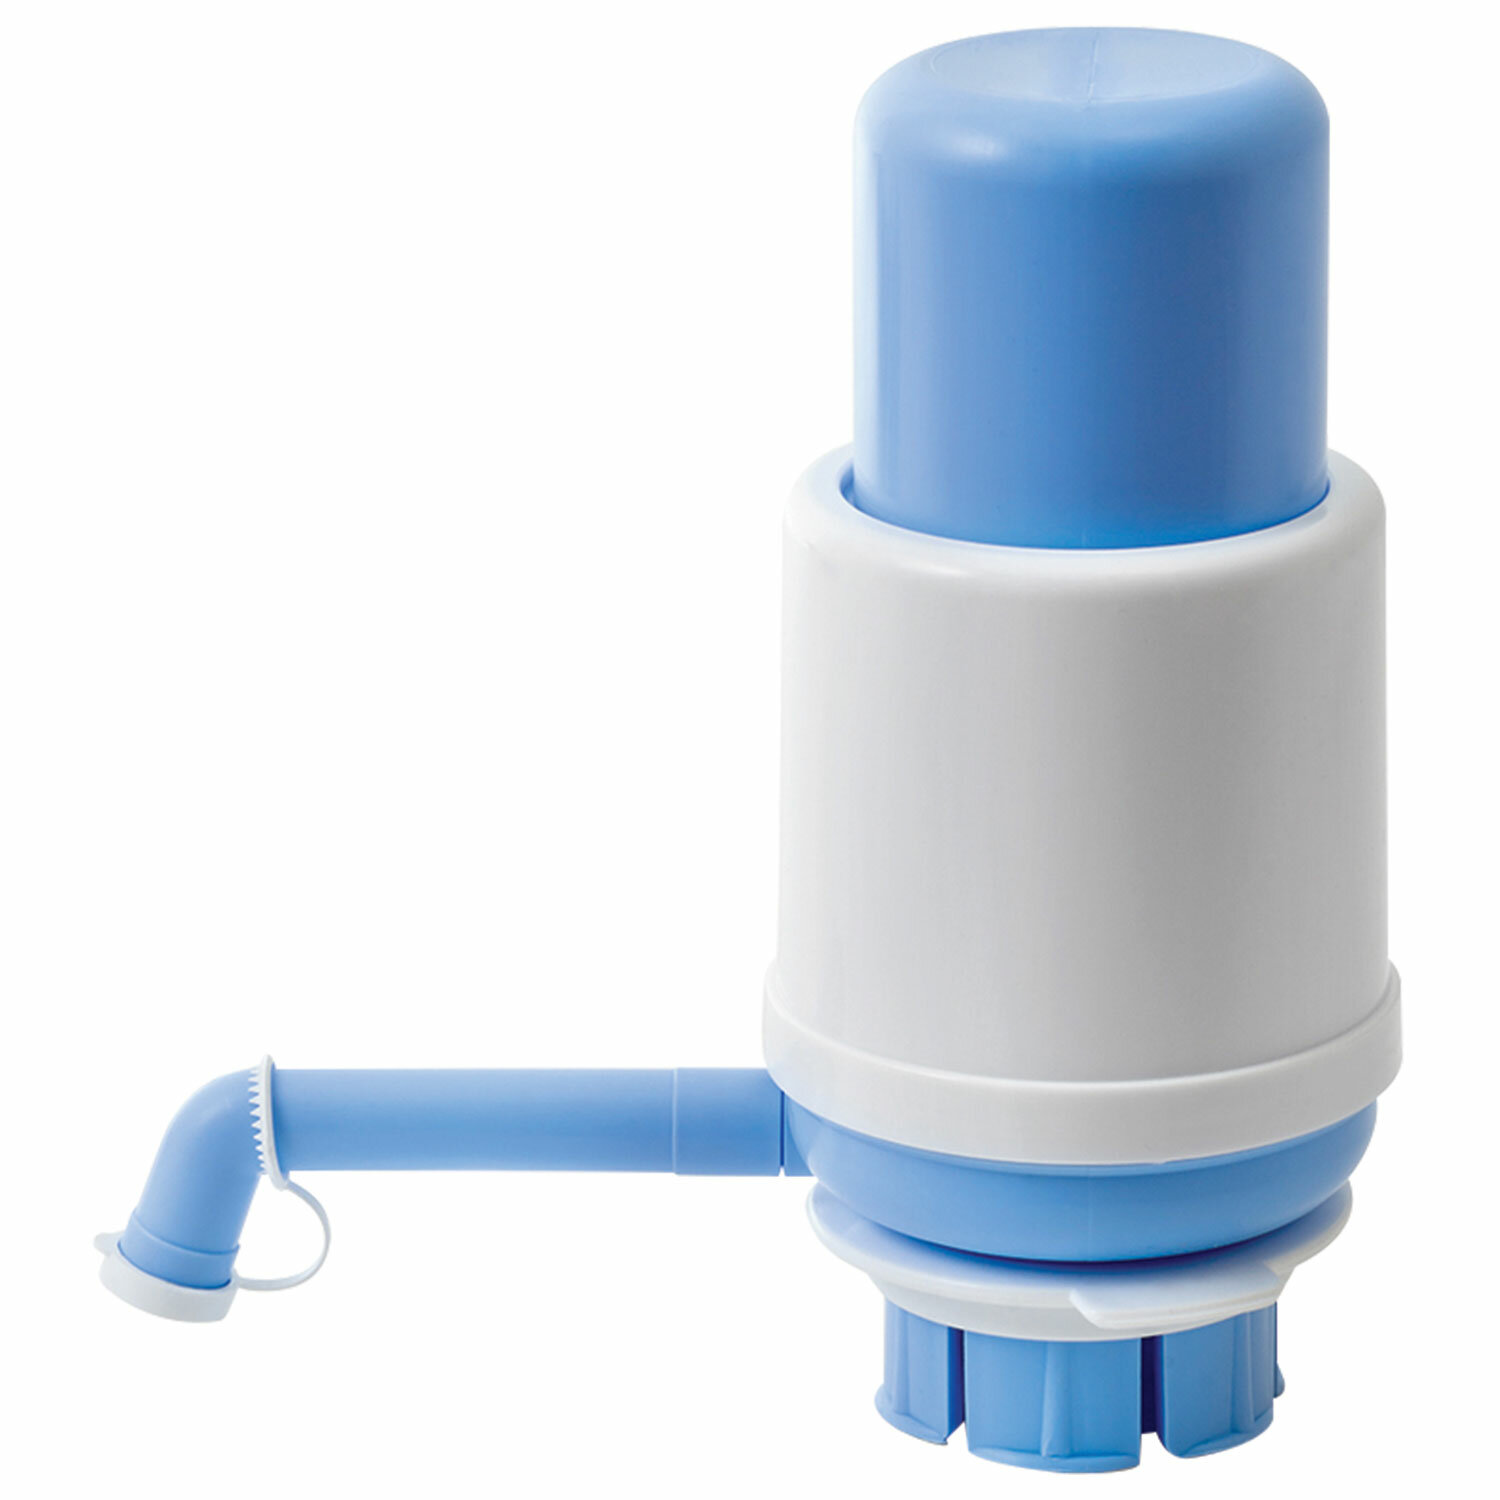 Помпа для воды на бутыль VATTEN №5, без нагрева / без охлаждения, белый/голубой (4876)